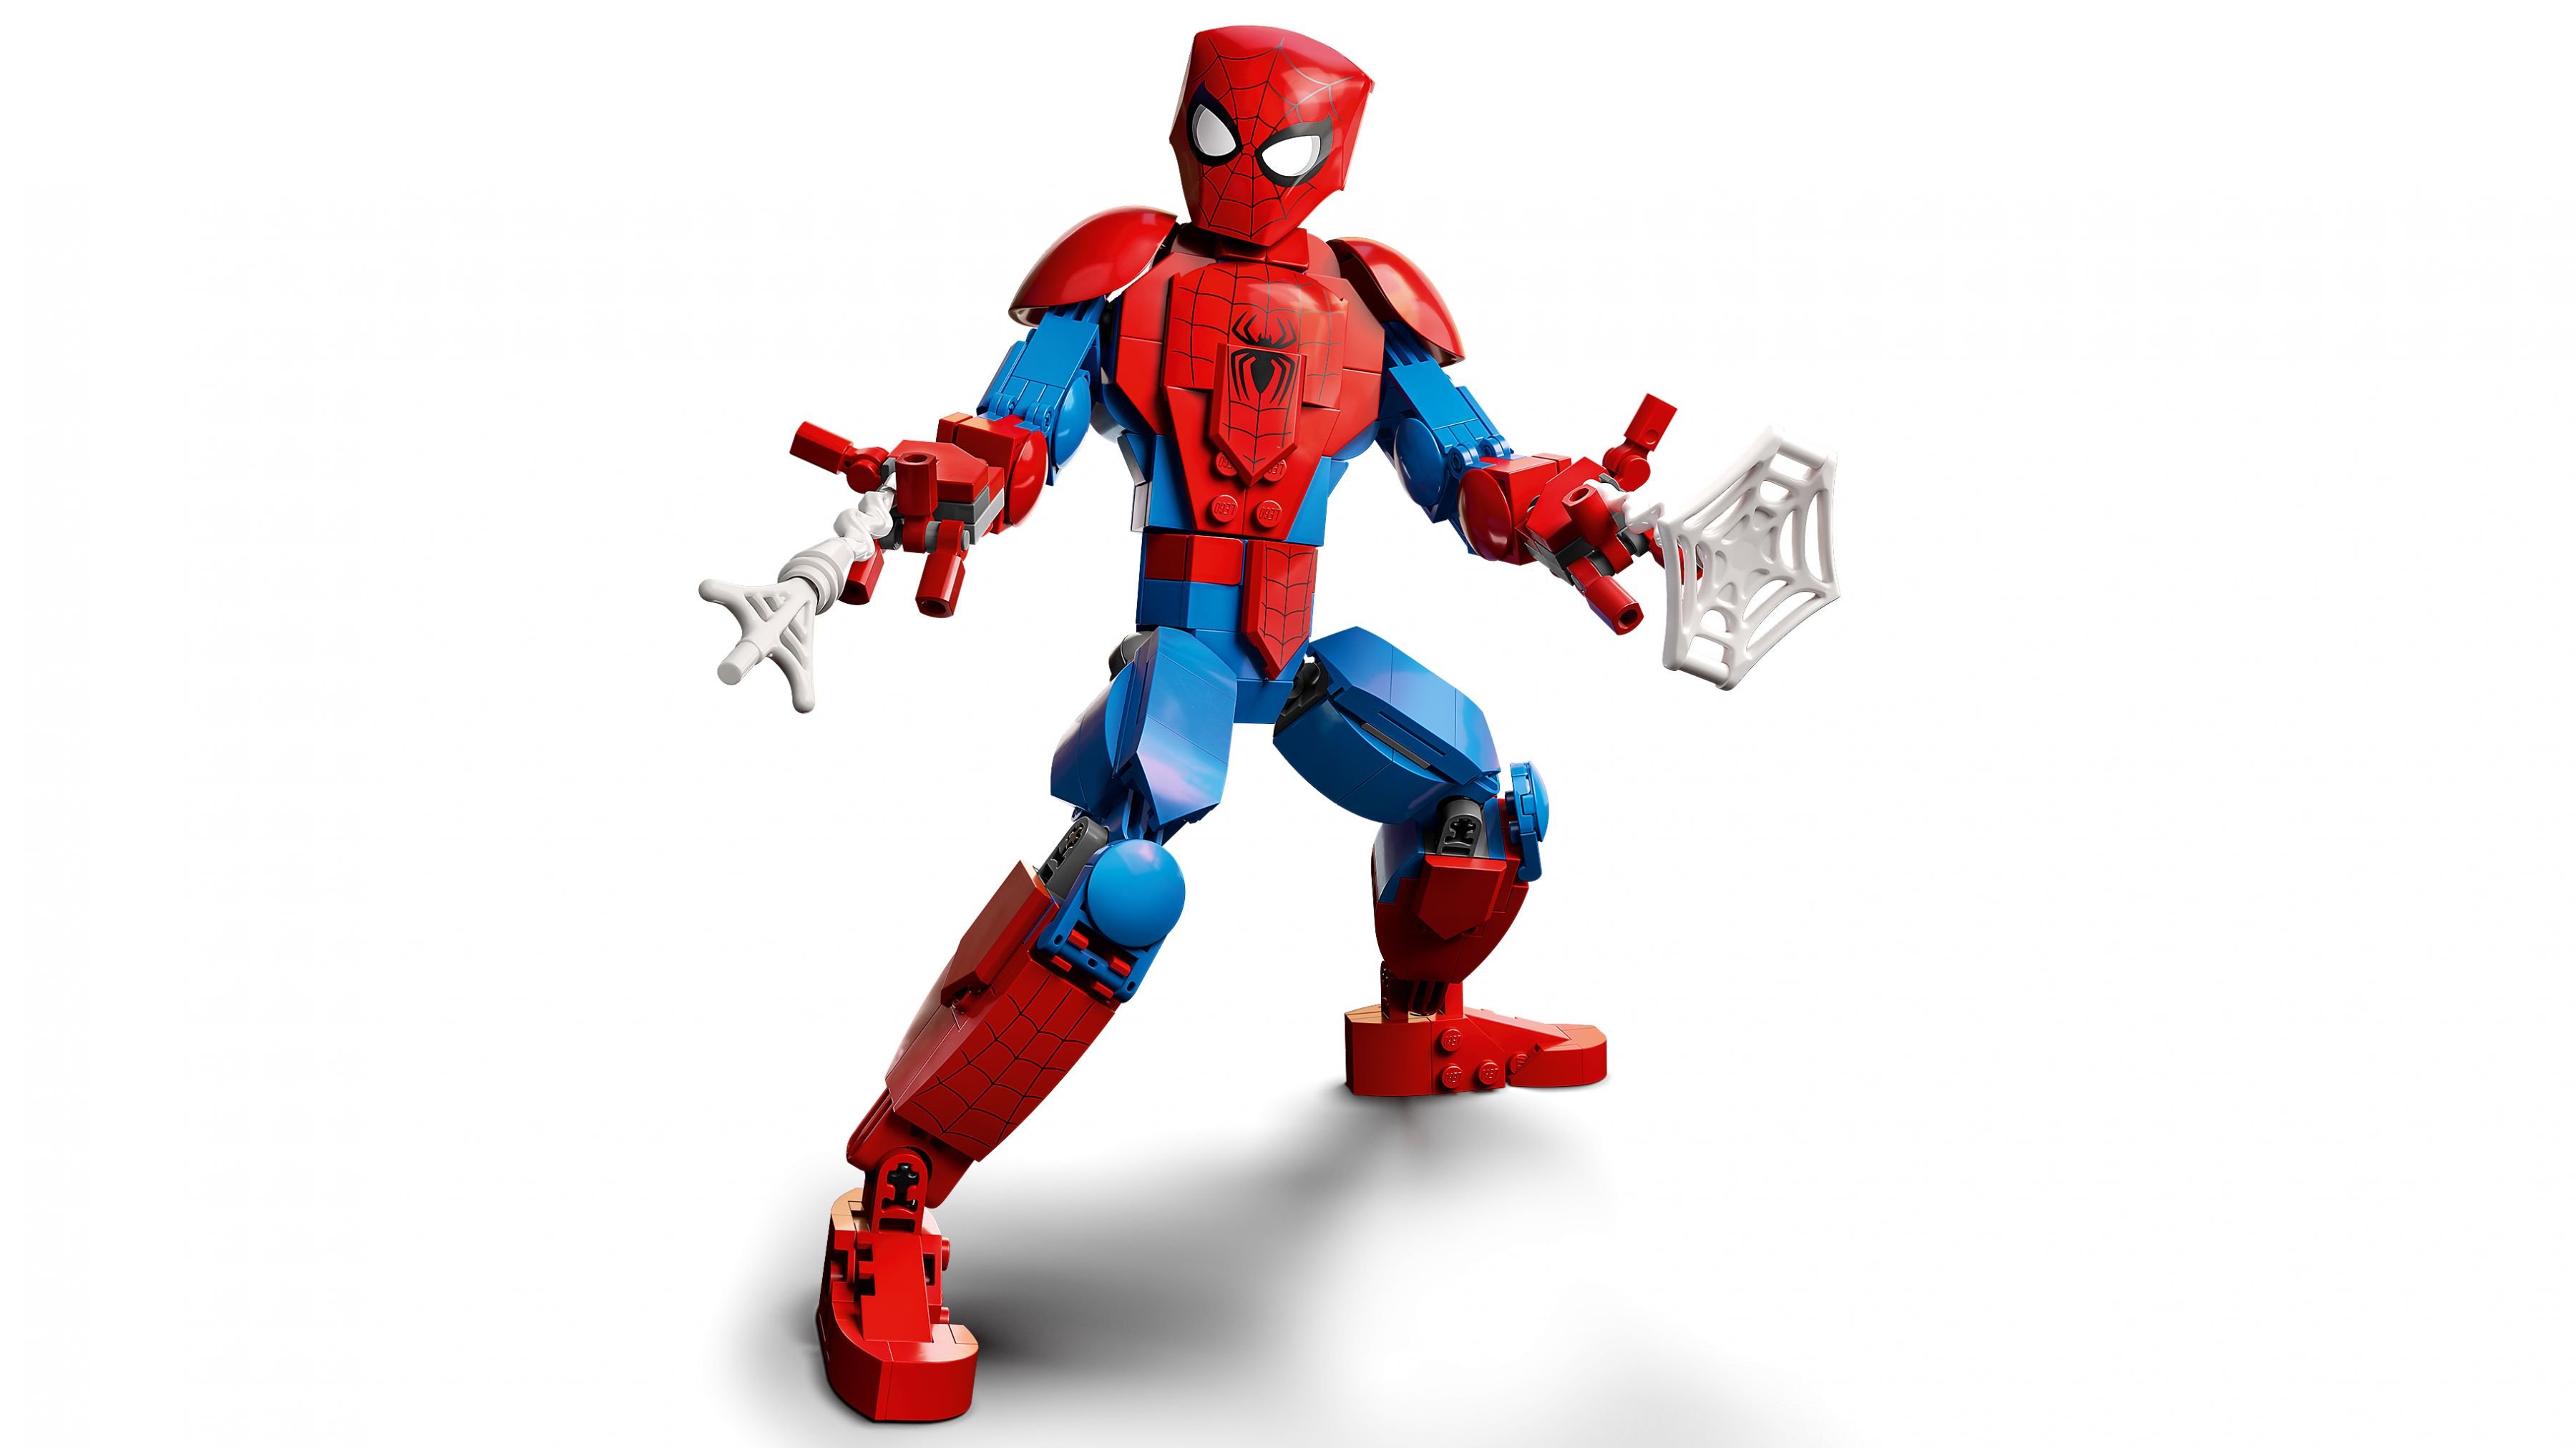 LEGO Super Heroes 76226 Spider-Man Figur LEGO_76226_WEB_SEC01_NOBG.jpg